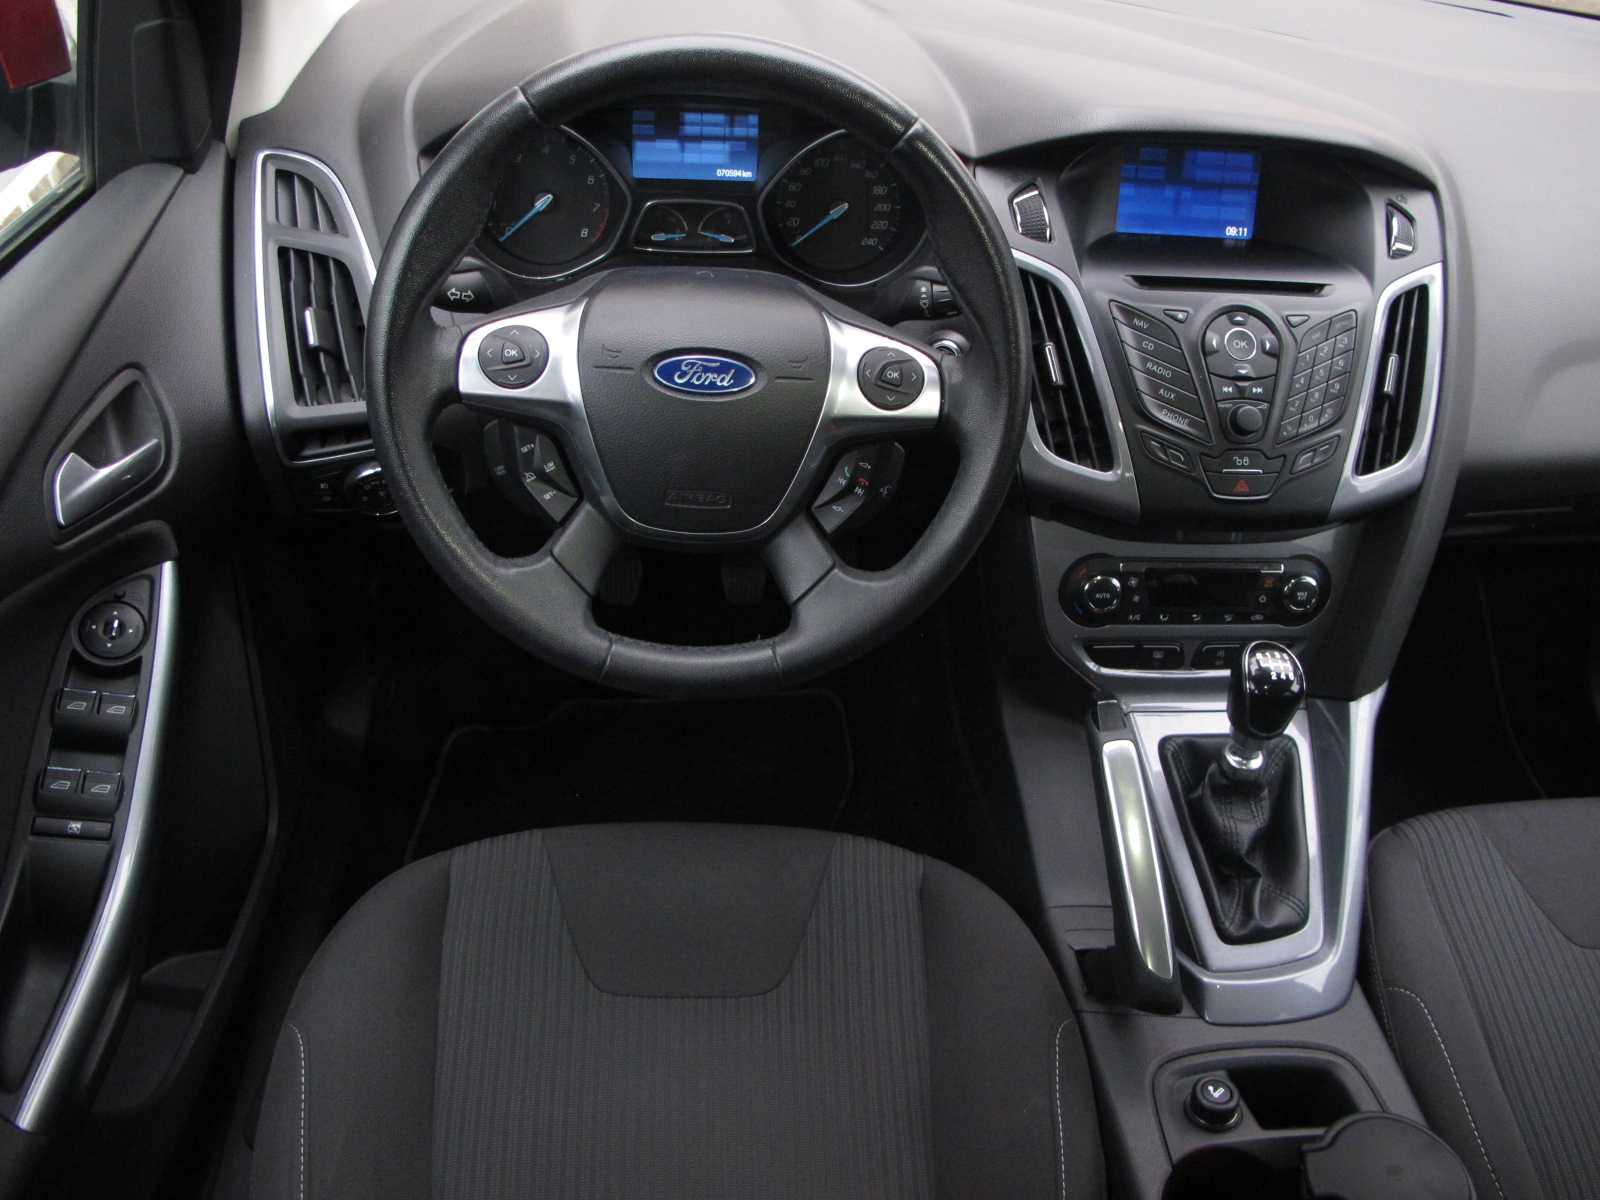 Ford focus 15 г.в., 1.6л., привет всем, бензиновый, хэтчбек, мощность 125 л.с., привод передний, акпп